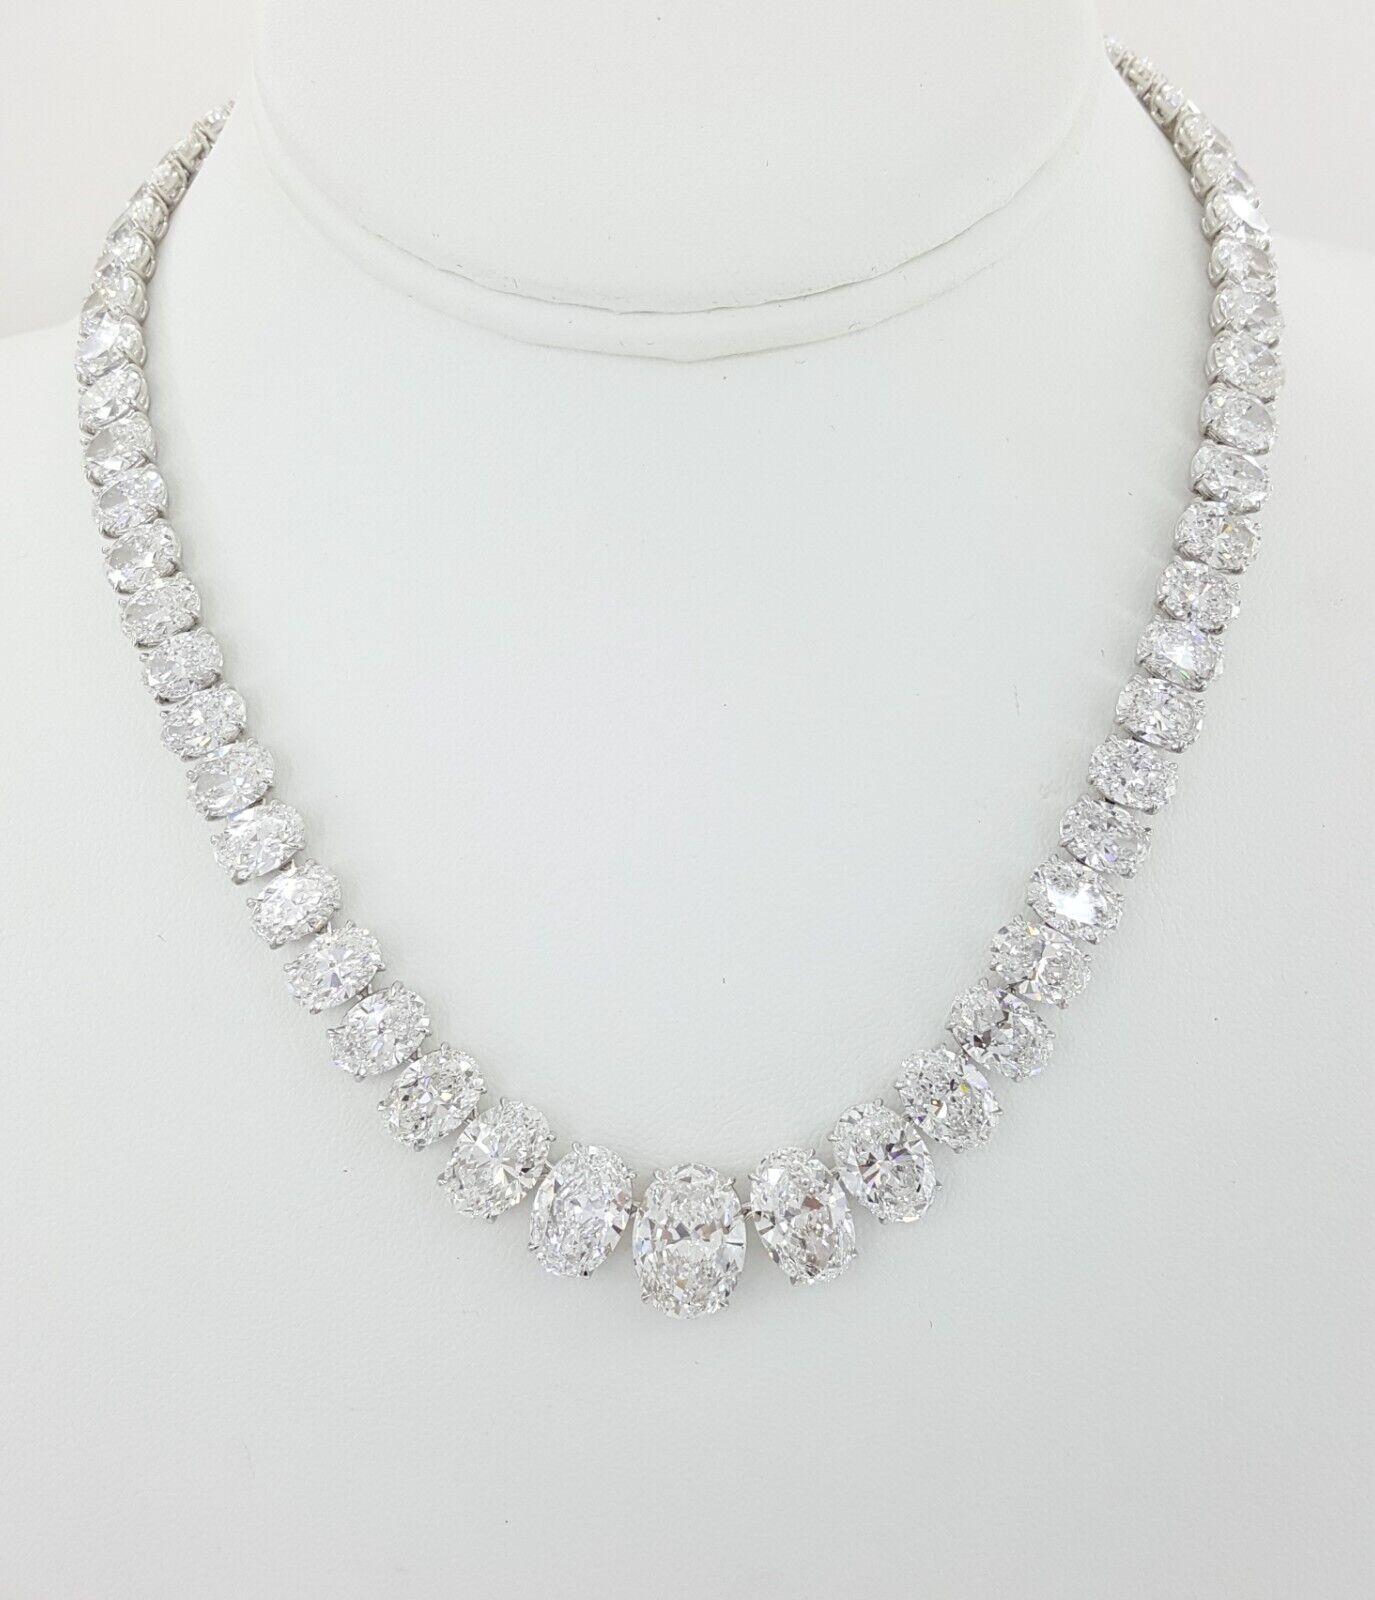 Das Riviera Diamond Necklace ist ein Meisterwerk von unvergleichlicher Kunstfertigkeit und Eleganz. Dieses in Handarbeit aus luxuriösem Platin gefertigte Collier besticht durch 65 GIA-zertifizierte Diamanten im Ovalschliff mit einem Gesamtgewicht